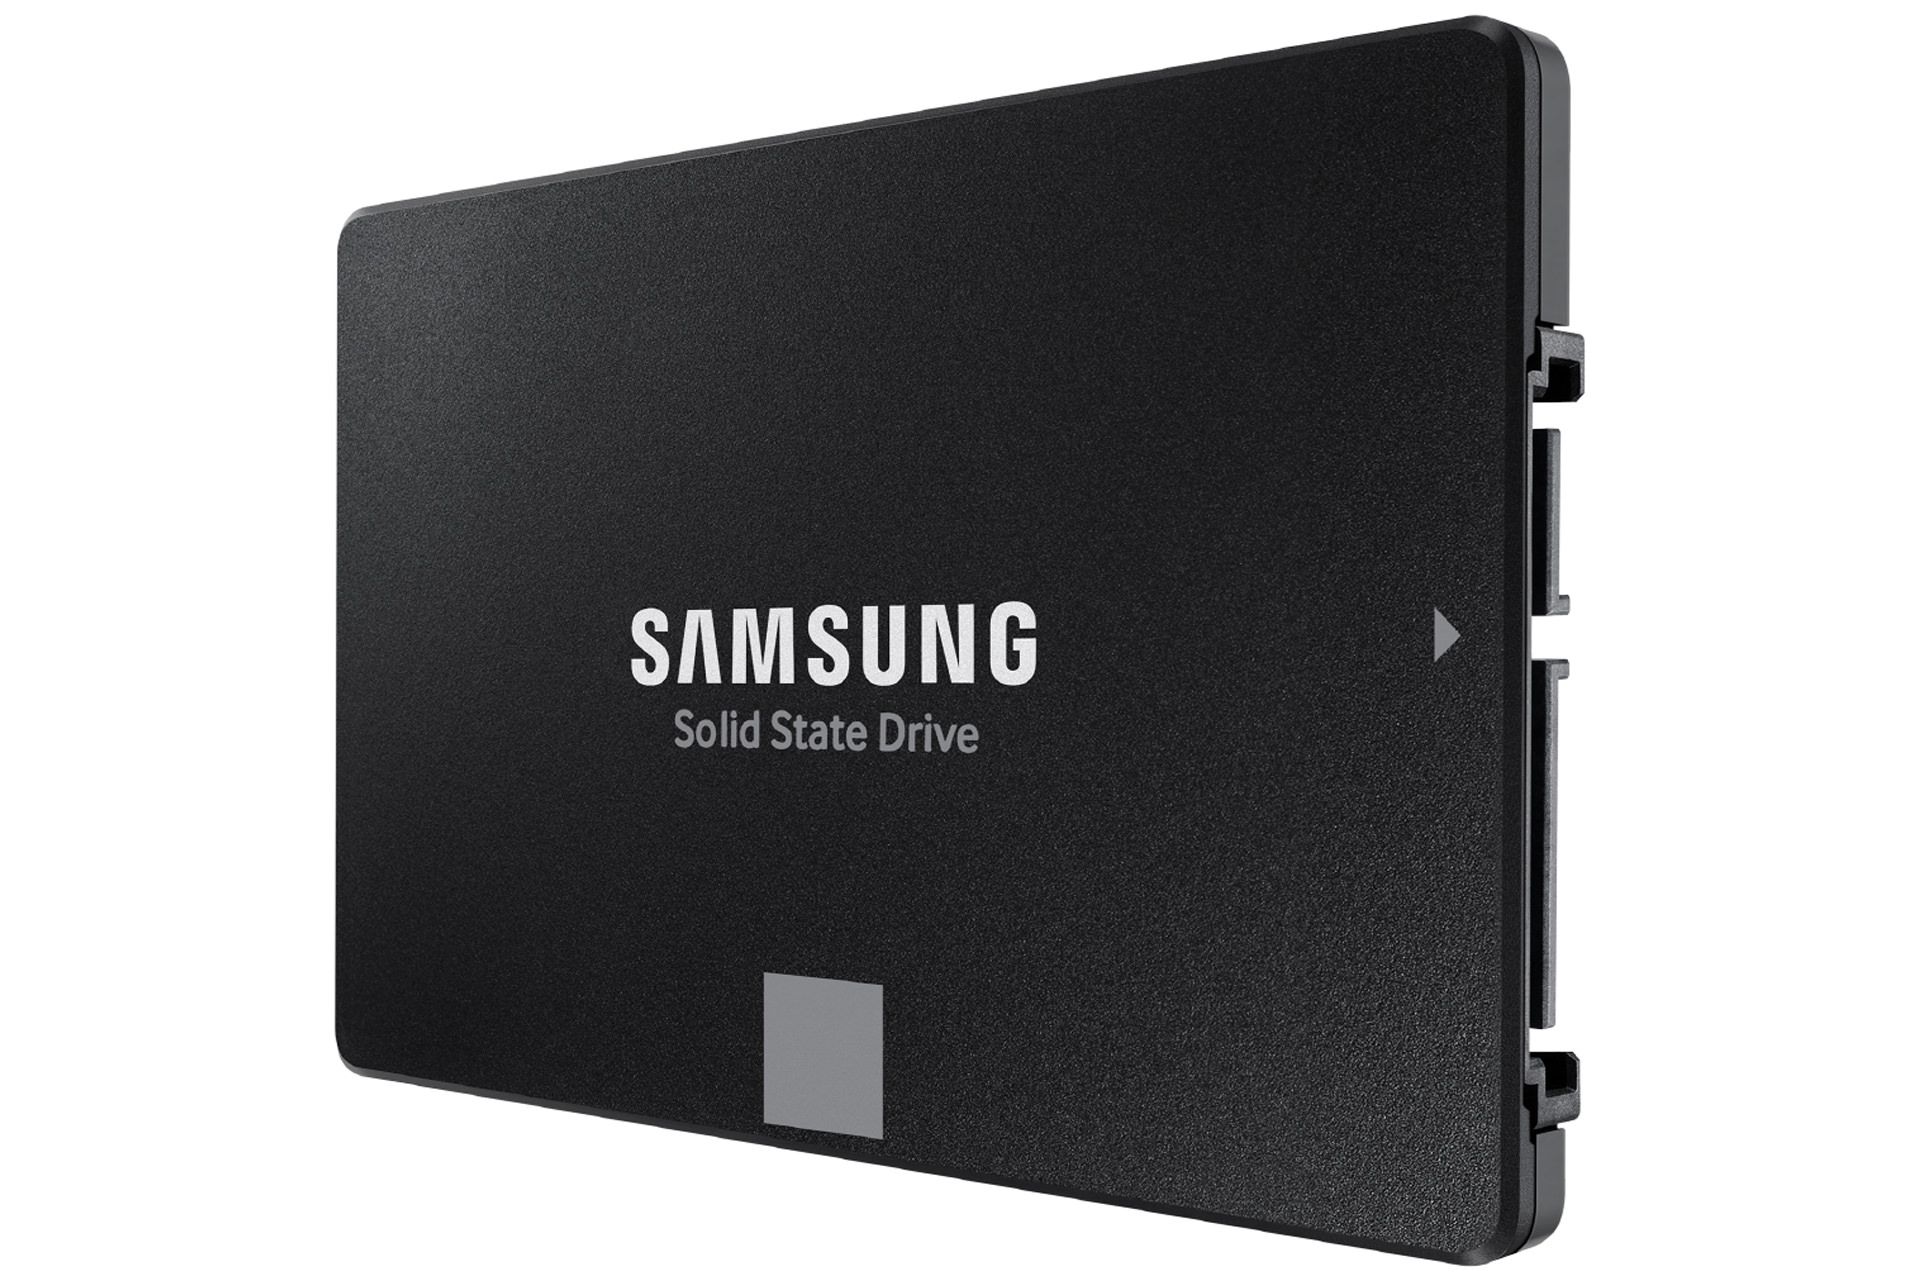 مرجع متخصصين ايران SSD سامسونگ Samsung 870 EVO از نماي جلو سه رخ رندر رسمي